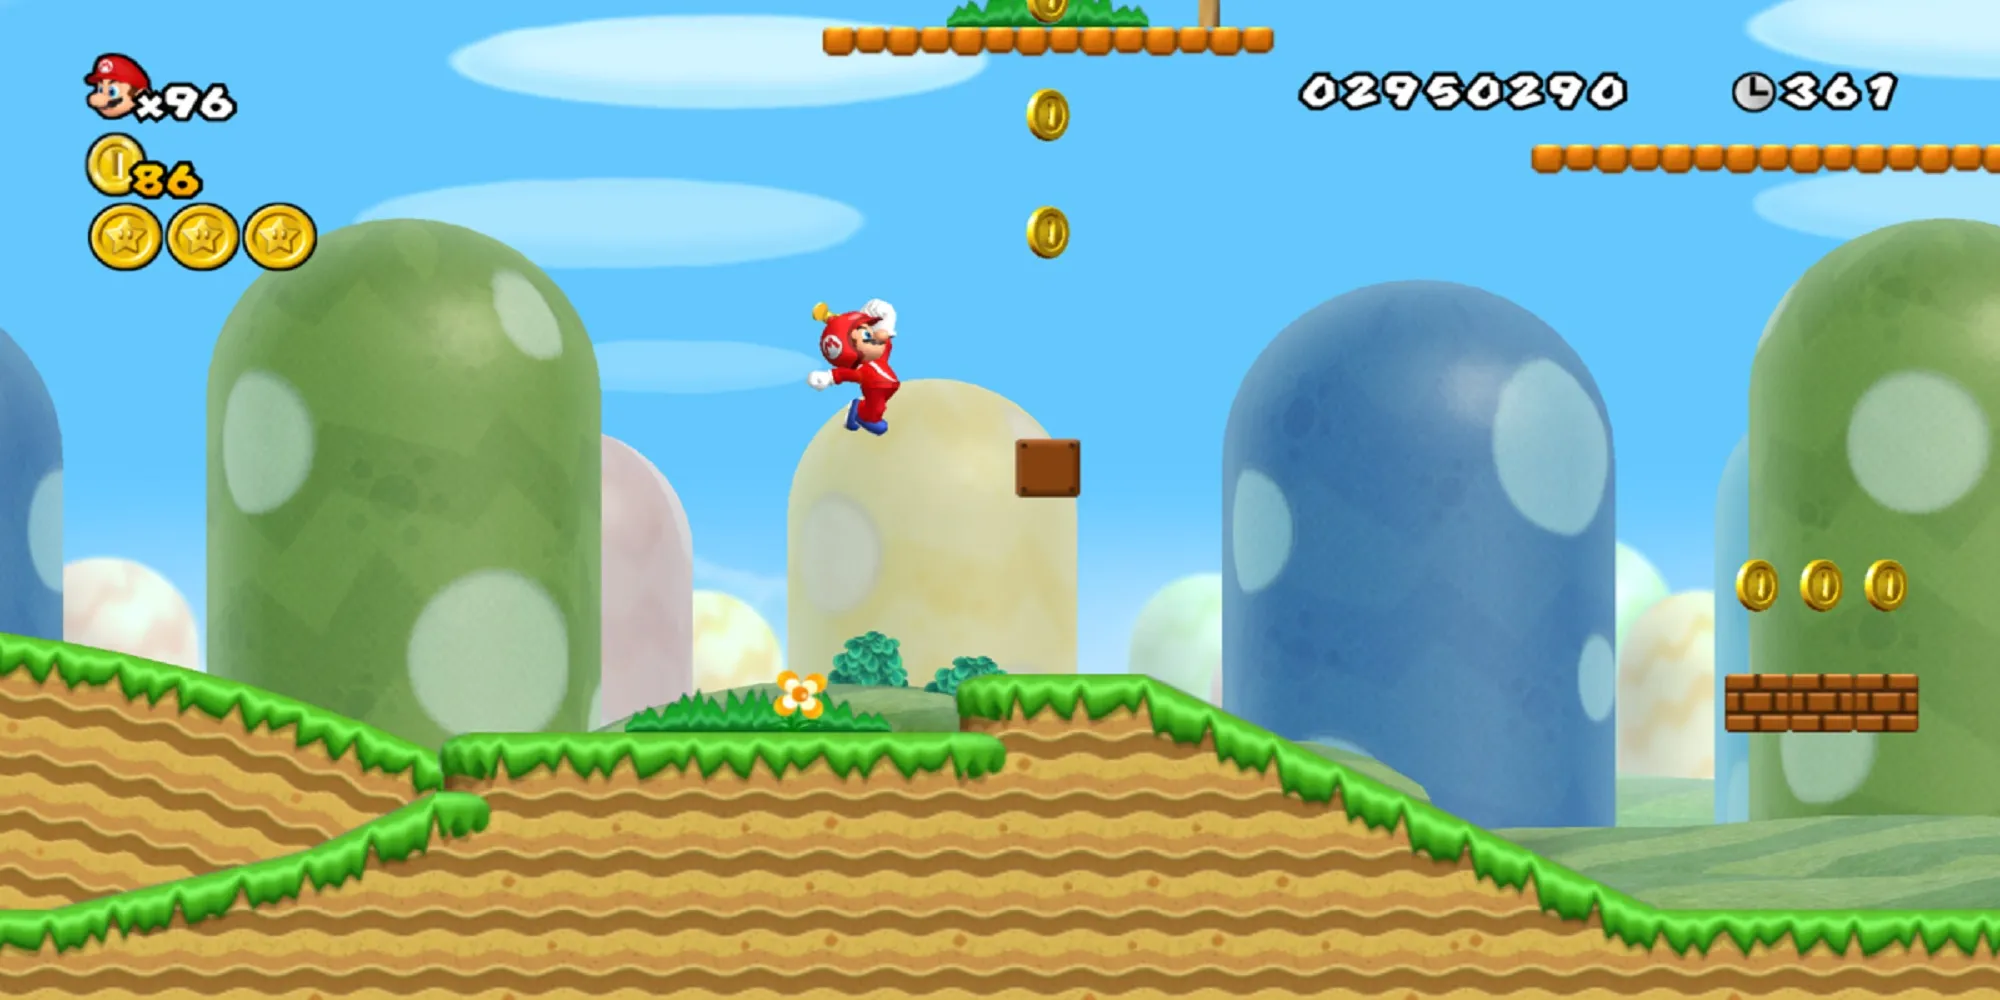 Mario con propulsore salta verso alcune monete